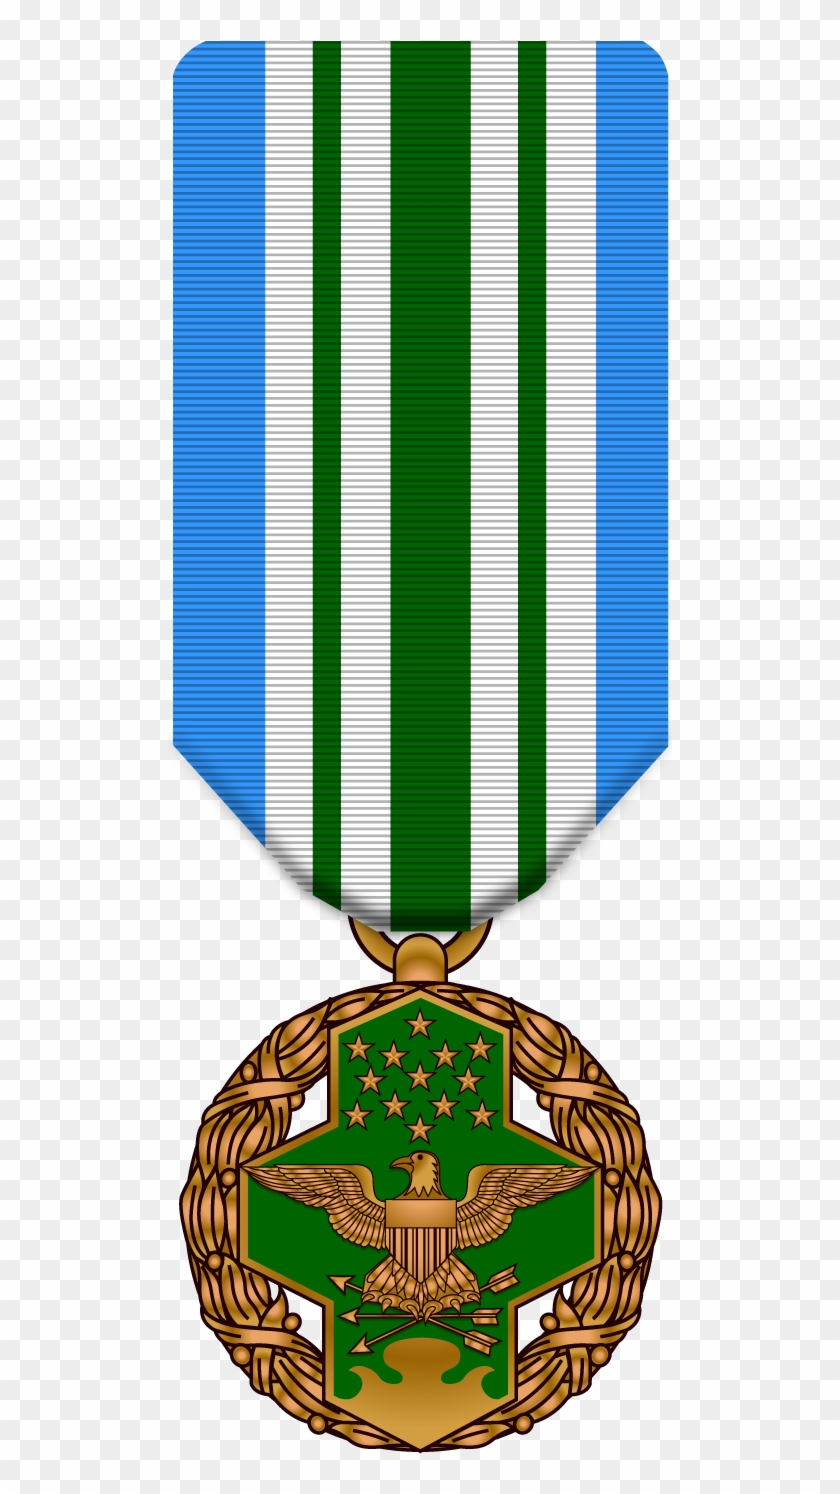 Joint Service Commendation Medal - Emblem #594118